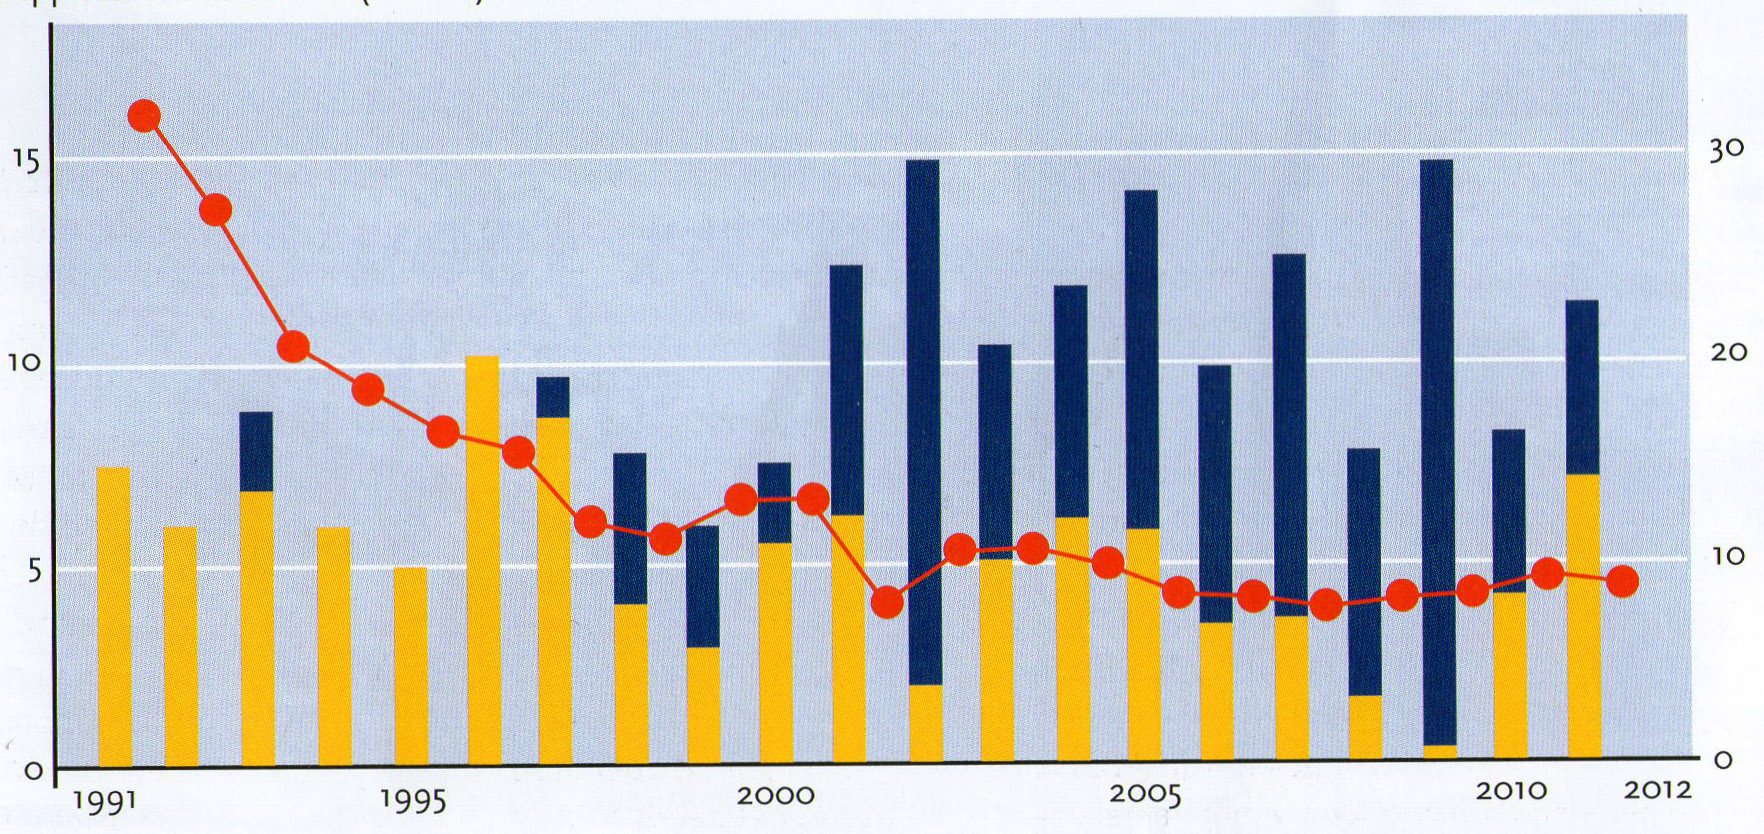 ...terwijl juist in 2006-periode de voeroeversuppleties verder in volume toenamen, waarvoor het Riacon-onderzoek in 1997 de schadelijke effecten op schelpdierfauna onderschreef